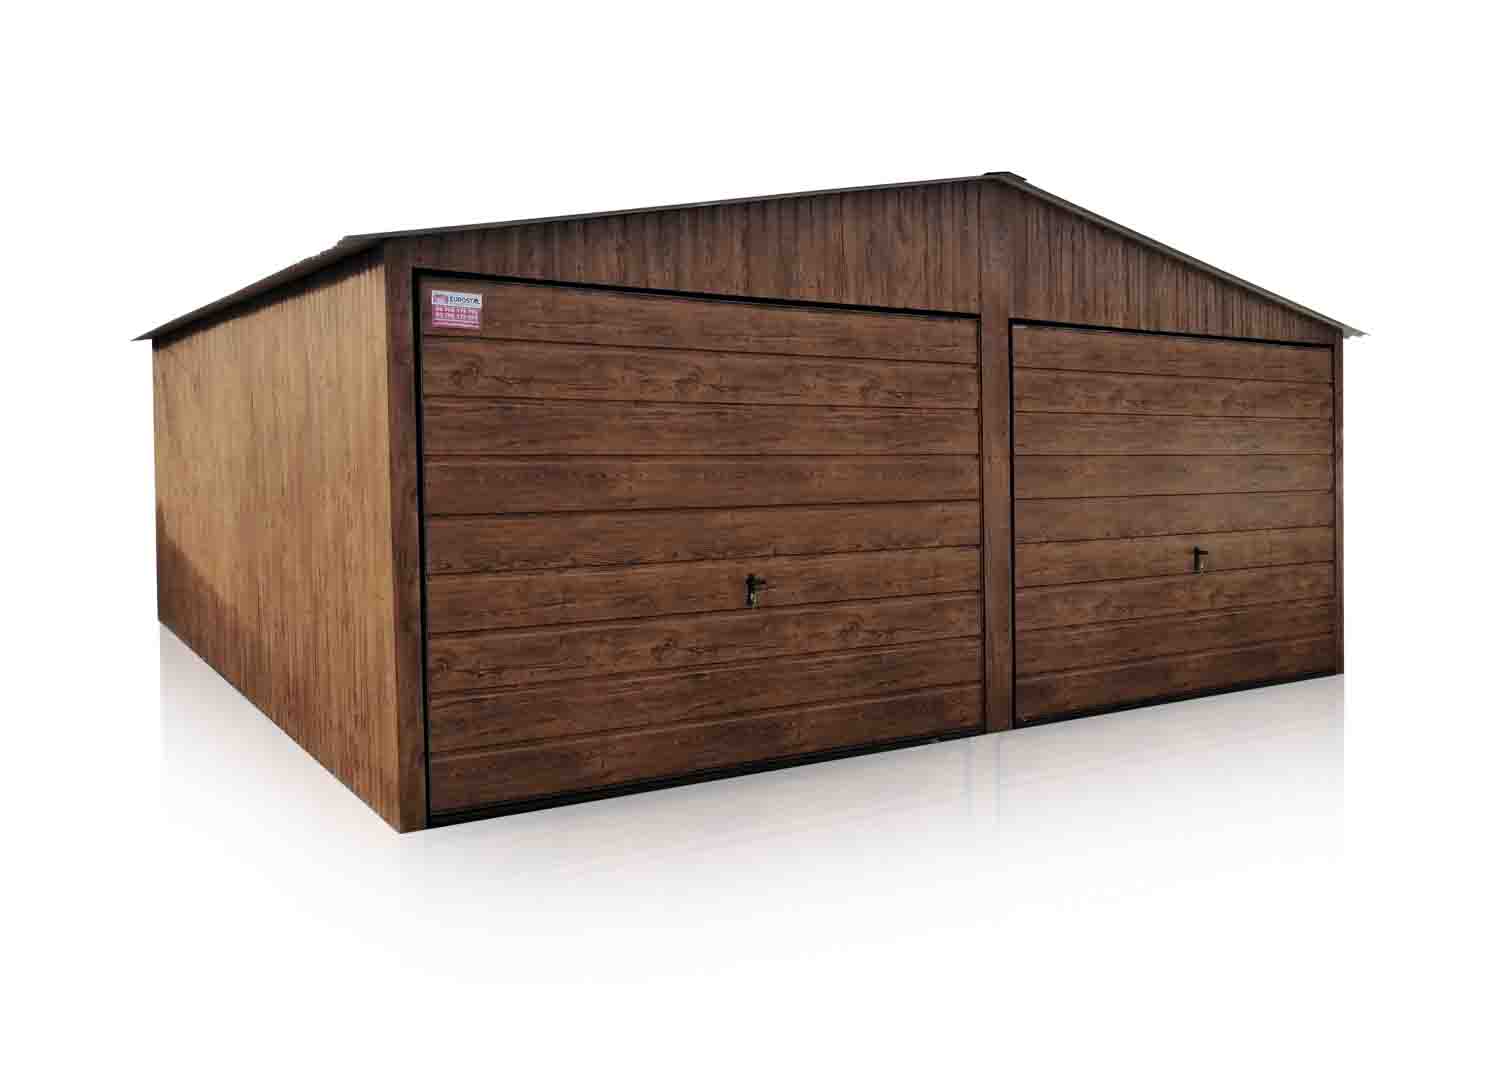 Plechová garáž 6×5m sedlová strecha – tmavý orech